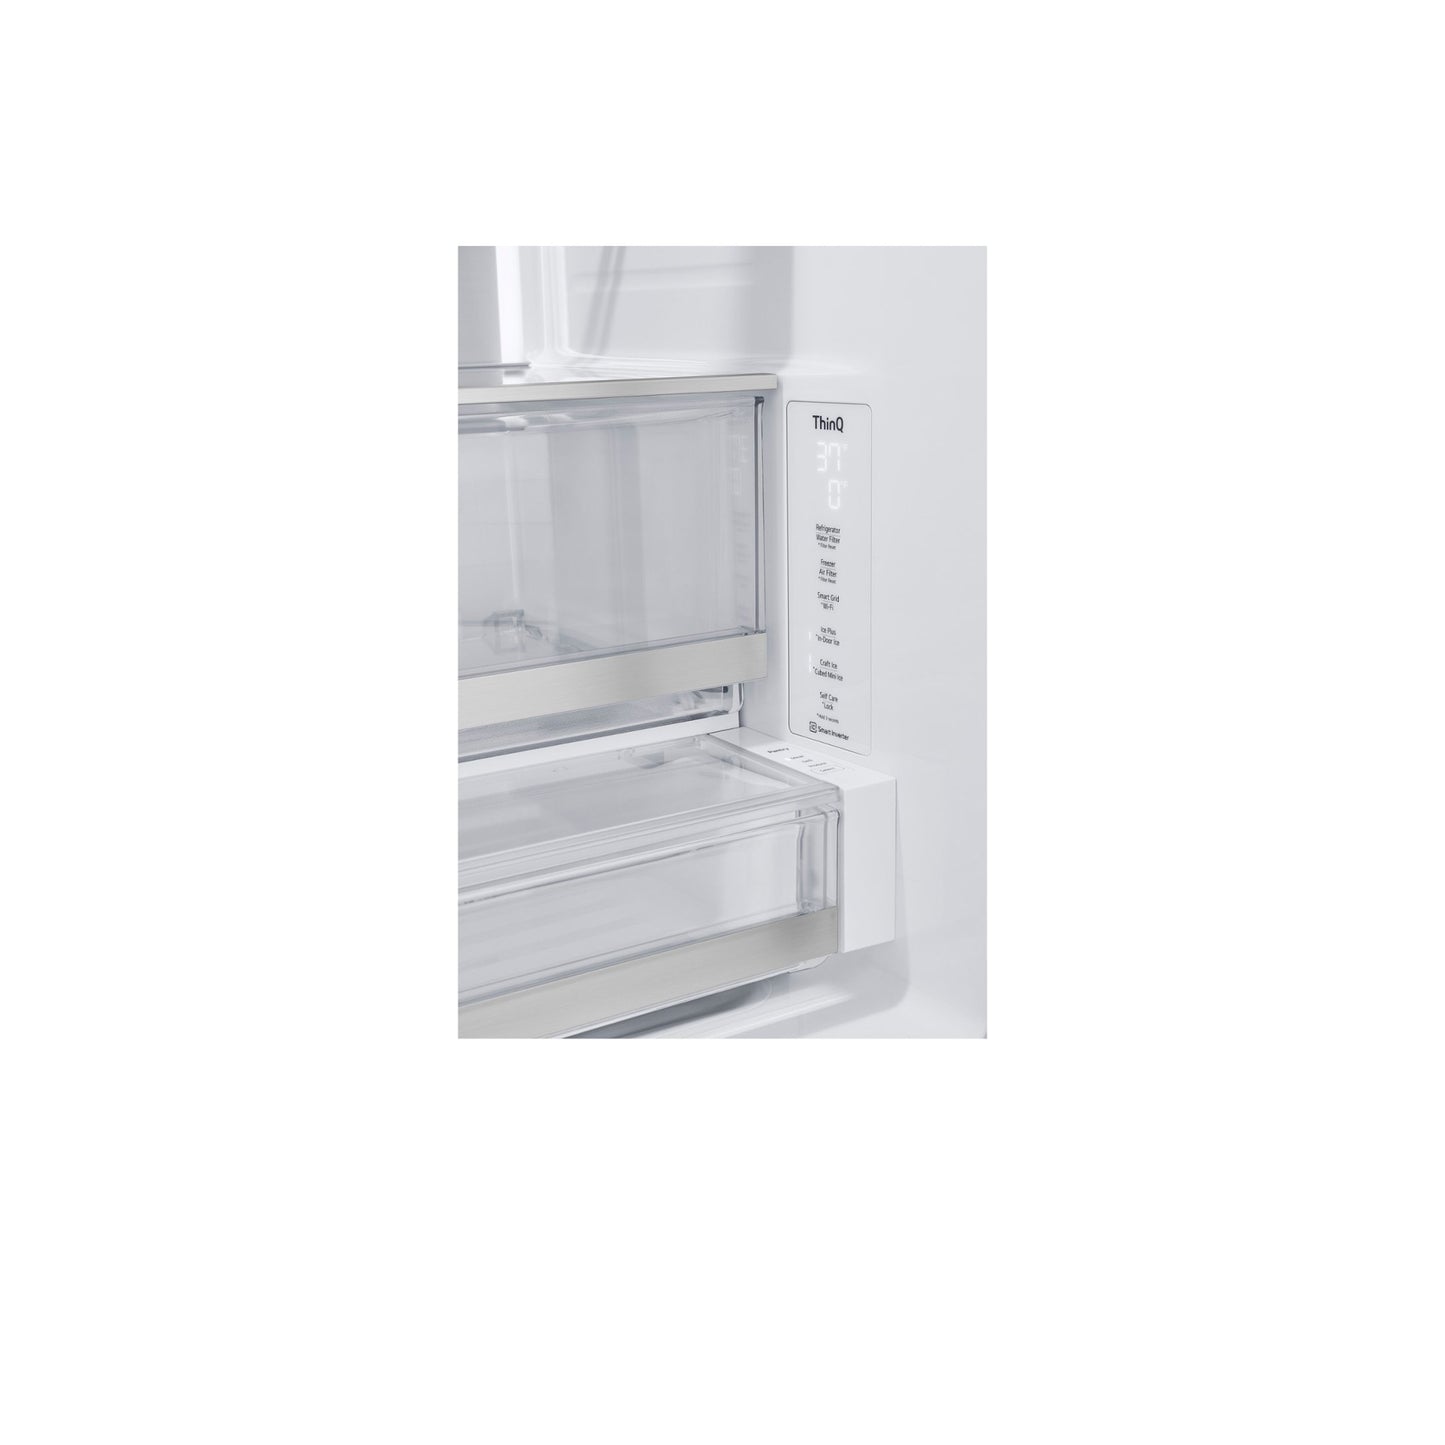 31 متر مكعب. قدم. ثلاجة Smart Standard-Depth MAX™ بباب فرنسي مع أربعة أنواع من الثلج ومرآة InstaView 